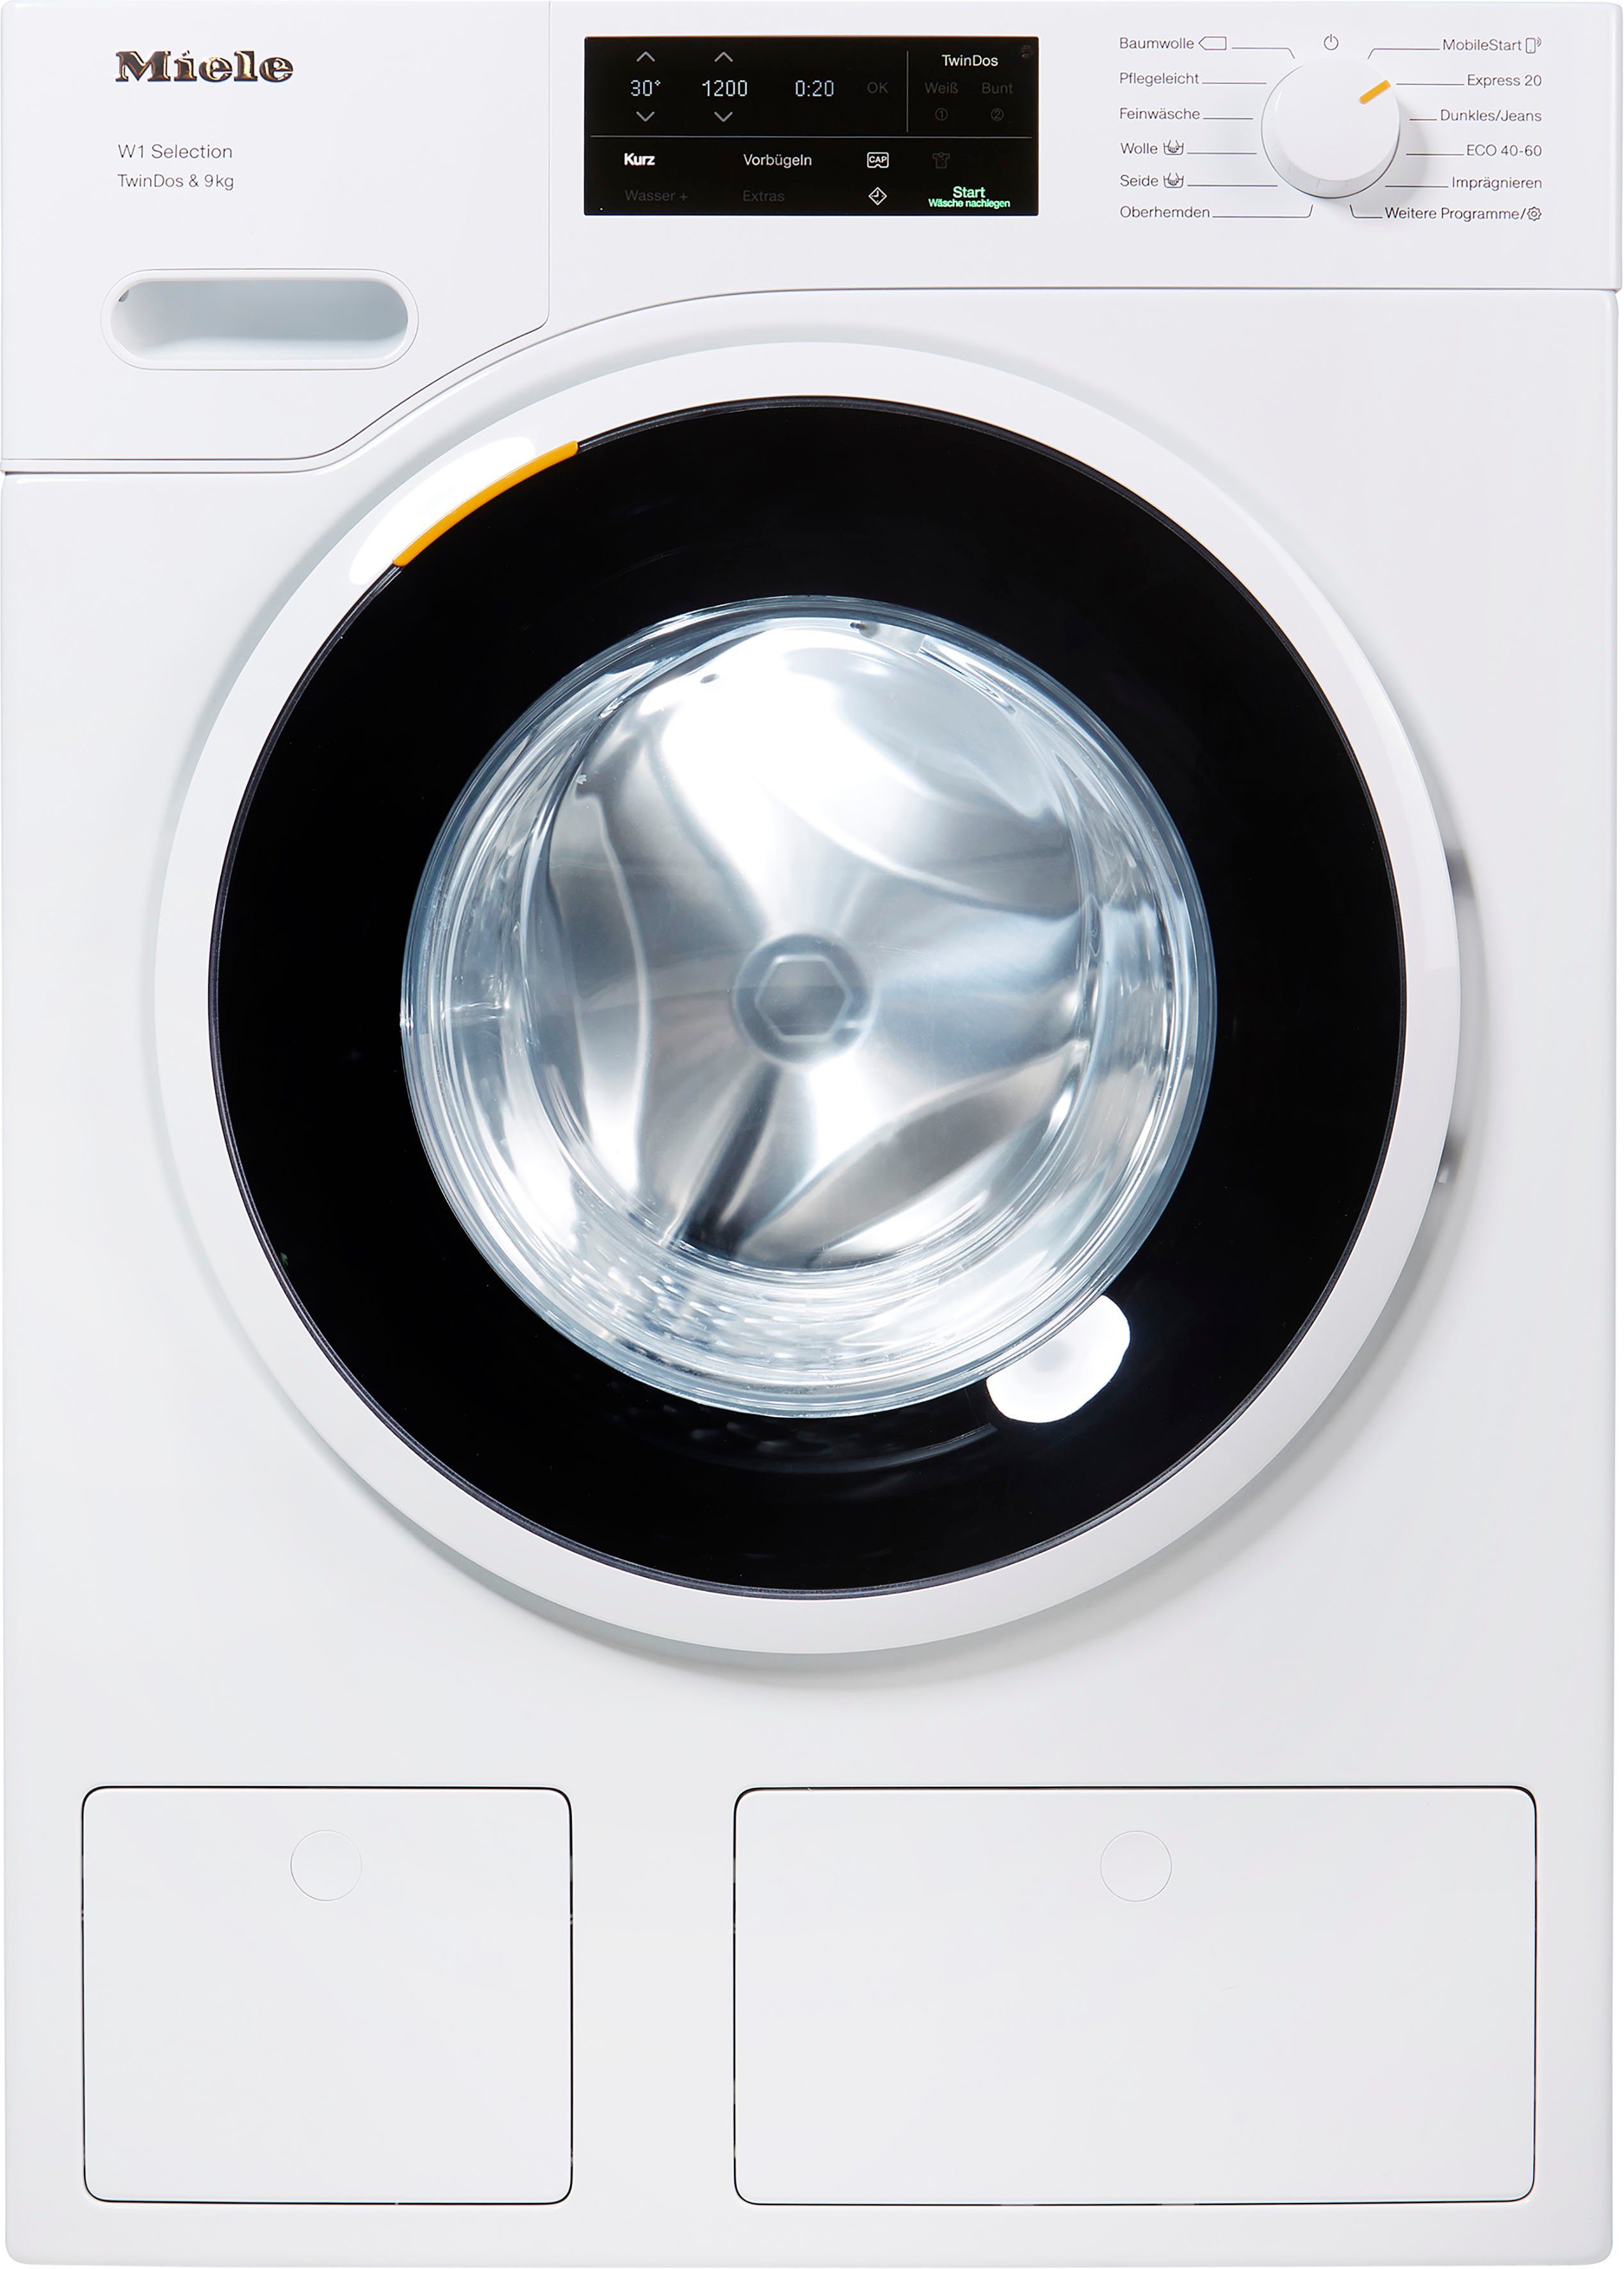 WSG663 9 Miele TDos&9kg, Waschmitteldosierung kg, TwinDos automatischen zur WCS Waschmaschine 1400 U/min,